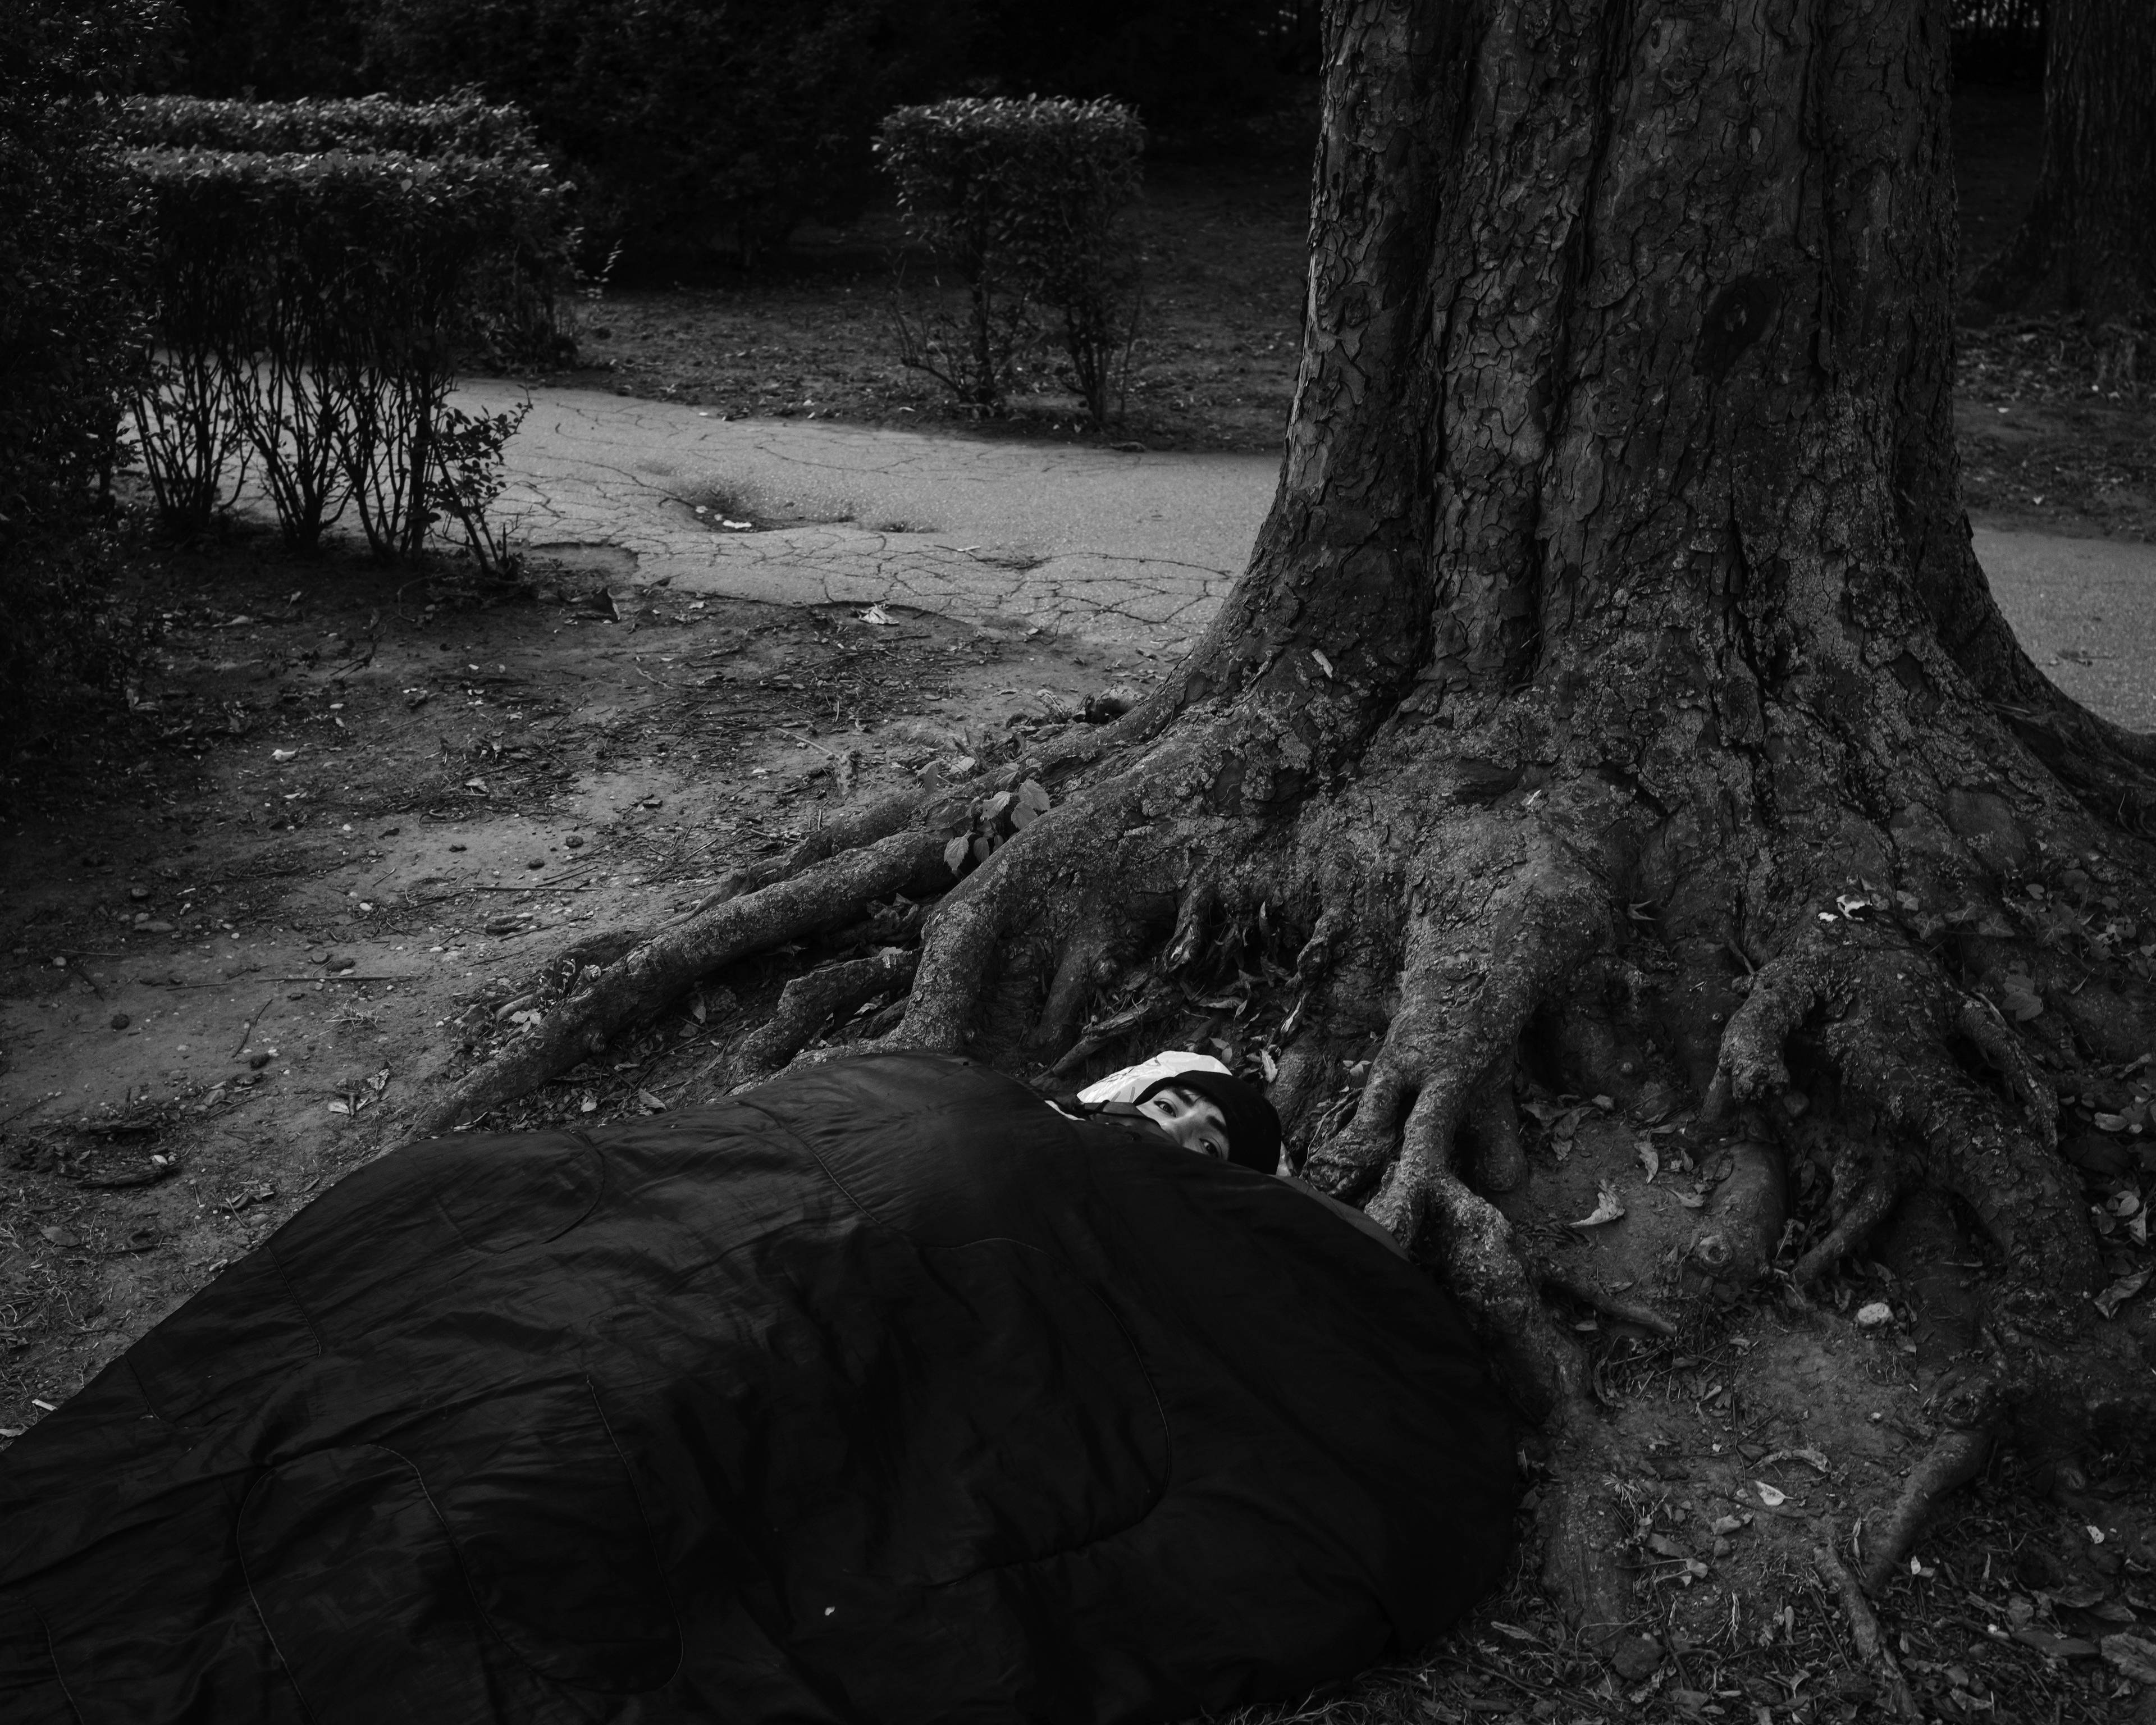 chłopak w śpiworze leży pod drzewem, cała postać jest przykryta, widać tylko oczy